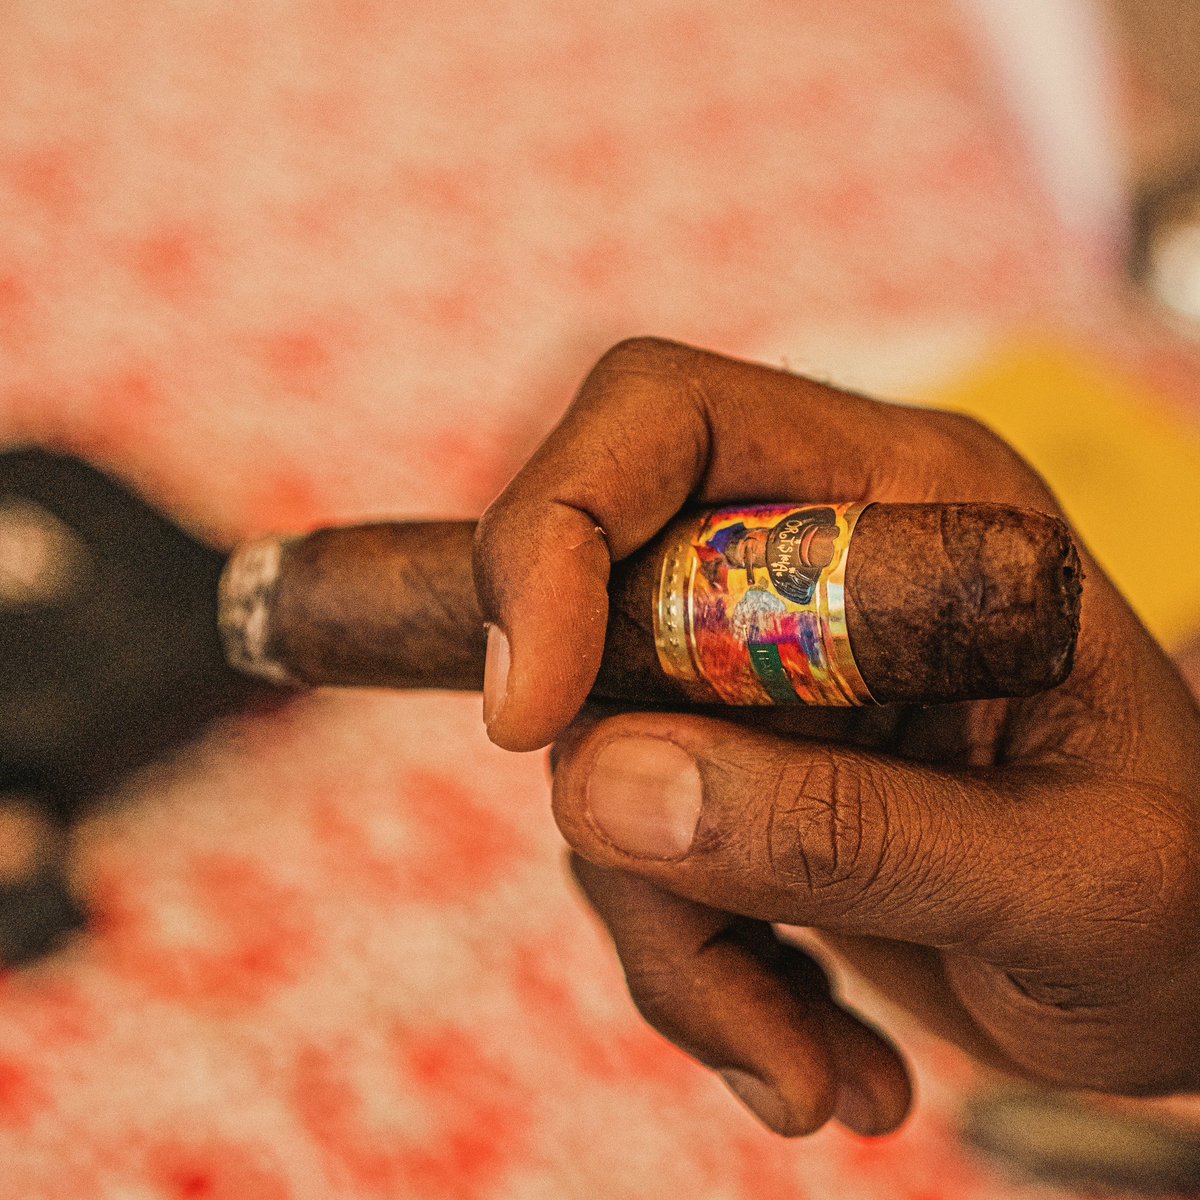 Happy Thursday smoke 💨 with @OrishaCigarSA
#Orisha 
.
.
==> GerbyClick.com/Shop
.
.
.
.
.
.
. 
.
.
.
#OrishaCigars #OrishaCigar #Cigar #CigarSmoker #Cigars #CigarLover #CigarLife #CigarSociety #CigarAficionado #CigarCulture #HaitianCigar #Haiti #Ayiti